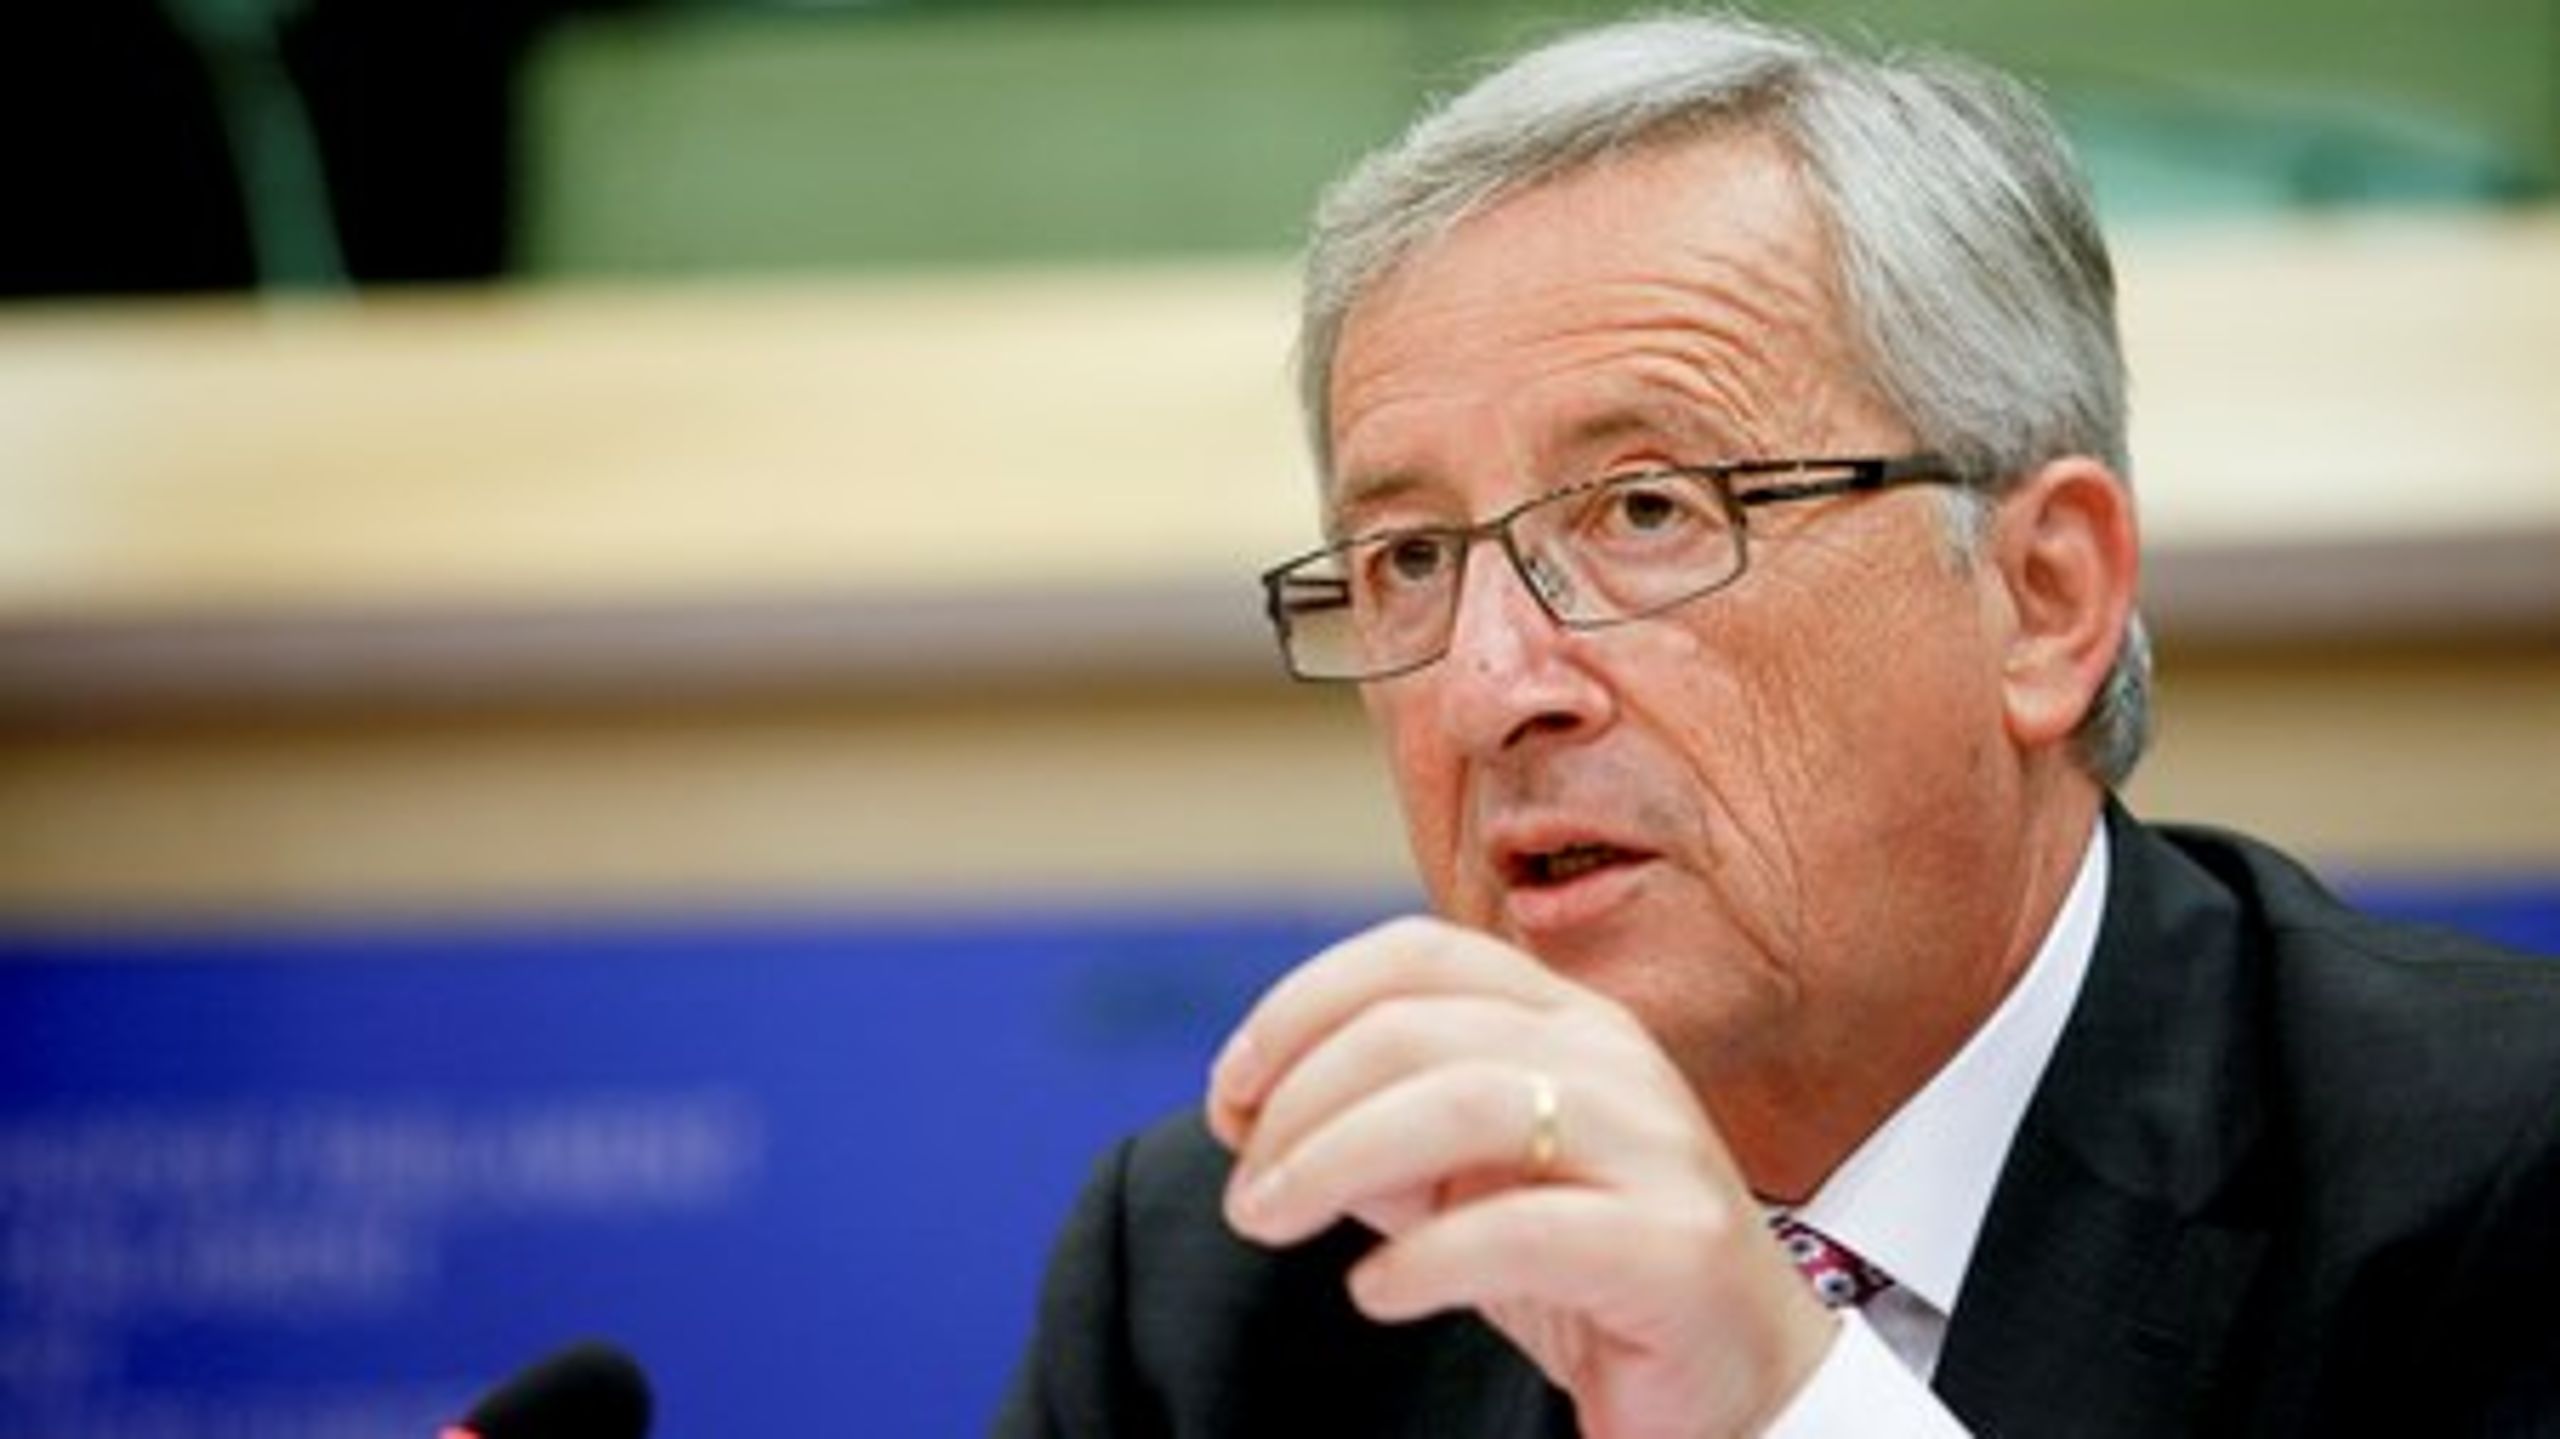 Den næste formand for EU-Kommissionen, Jean-Claude Juncker, har fået forbruger- og sundhedsorganisationer på nakken, efter han har besluttet at flytte ansvaret for regulering af medicin og medicinske produkter ind under EU's industripolitik.